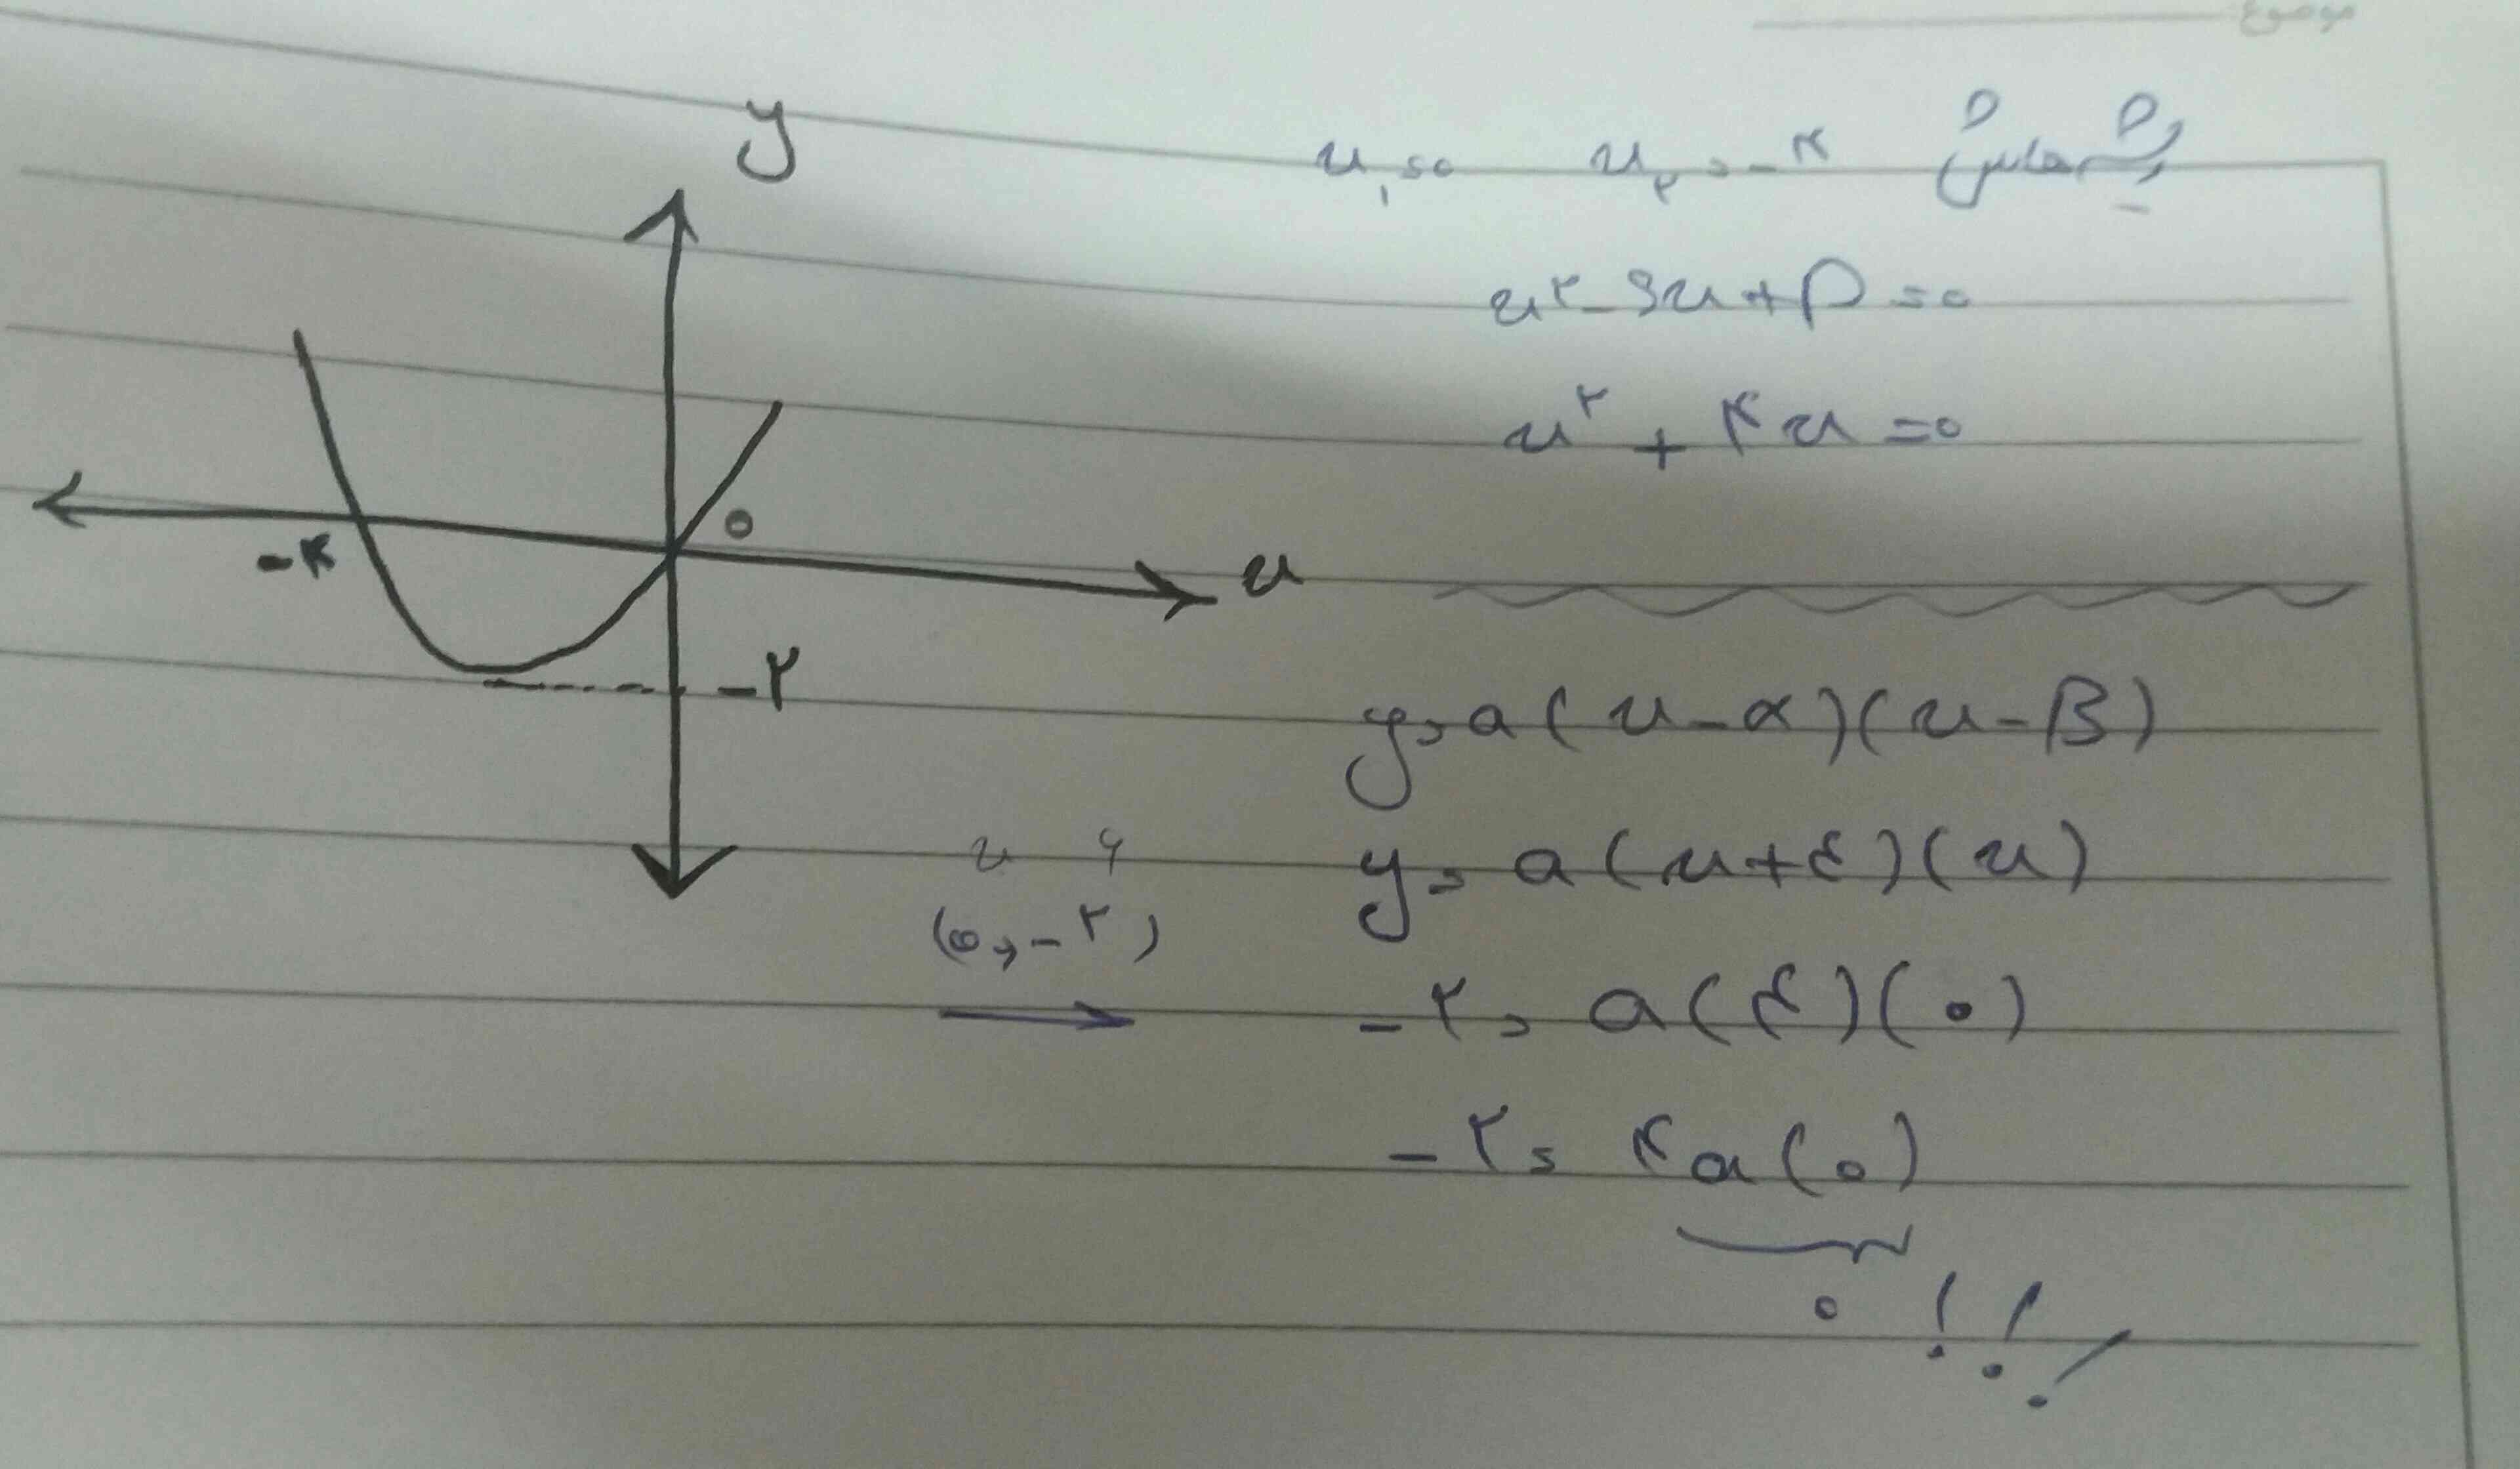 بچها من معادله این سهمی رو از دو روش نوشتم ولی جواباش یکی نیومد😑😭
 کجاش اشتباهه؟ میشه ی توضیحی بدین؟